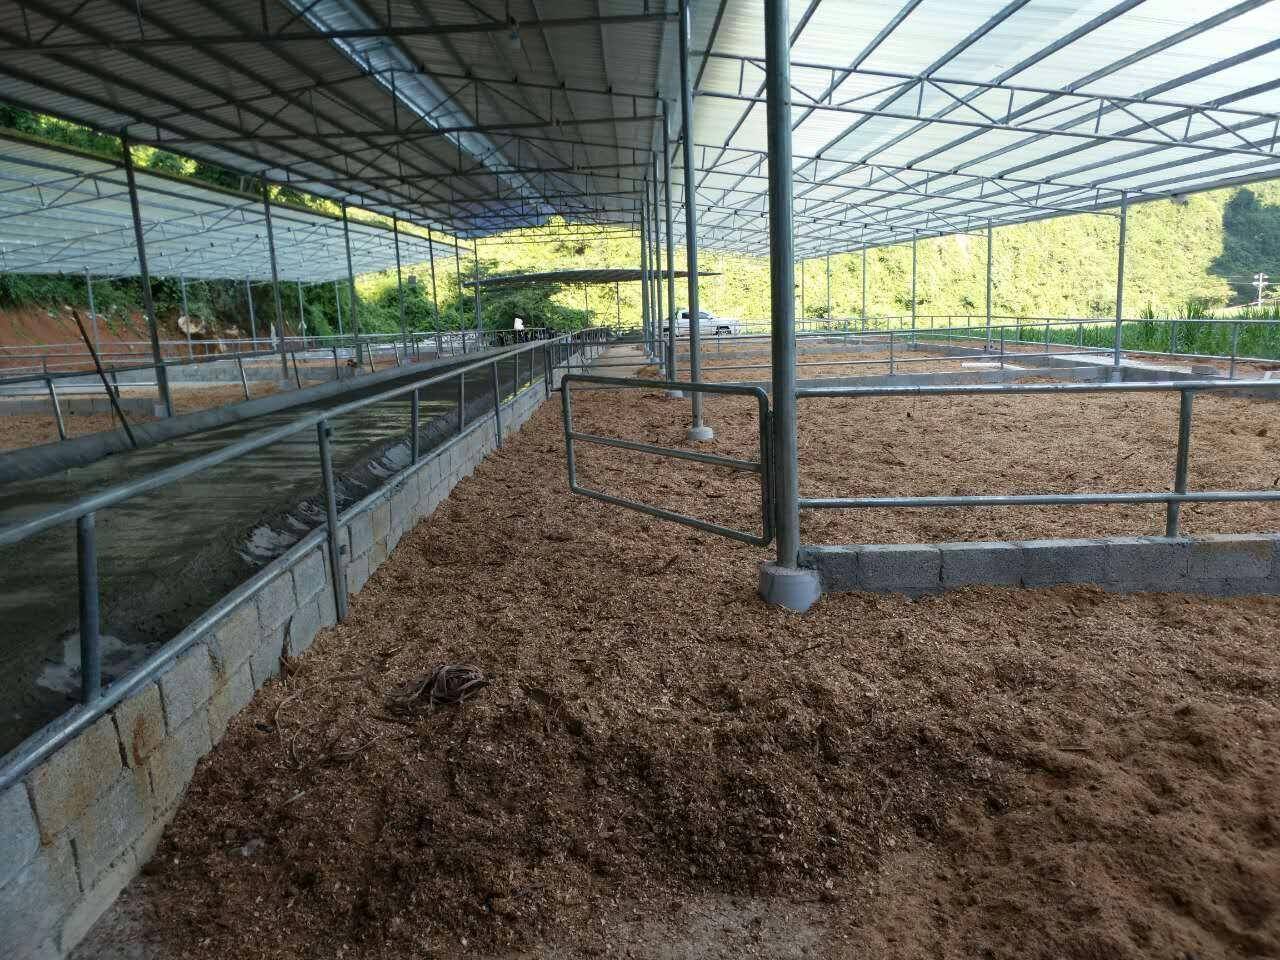 发酵床在养牛业中的革新应用:提升养殖效益与动物福利